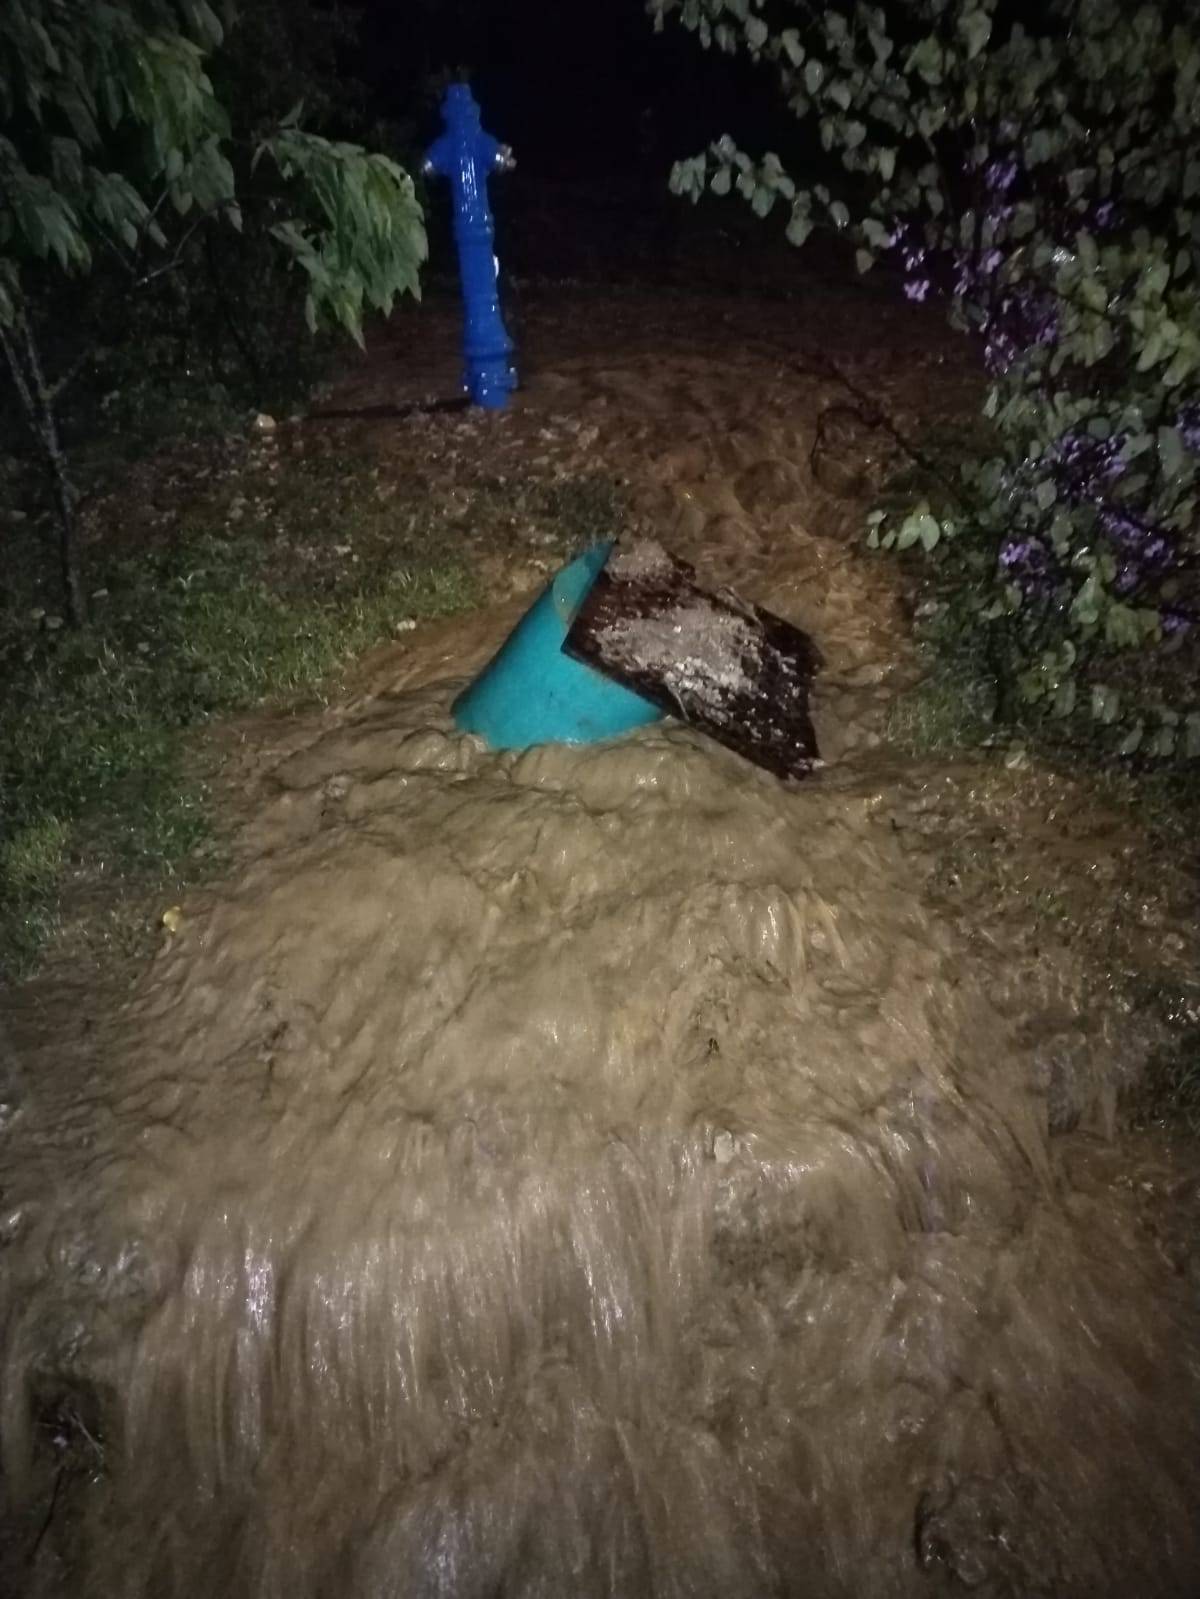 VIDEO Jaka tuča i nevrijeme u središnjoj Hrvatskoj: 'Padalo je desetak minuta, vrt je uništen'